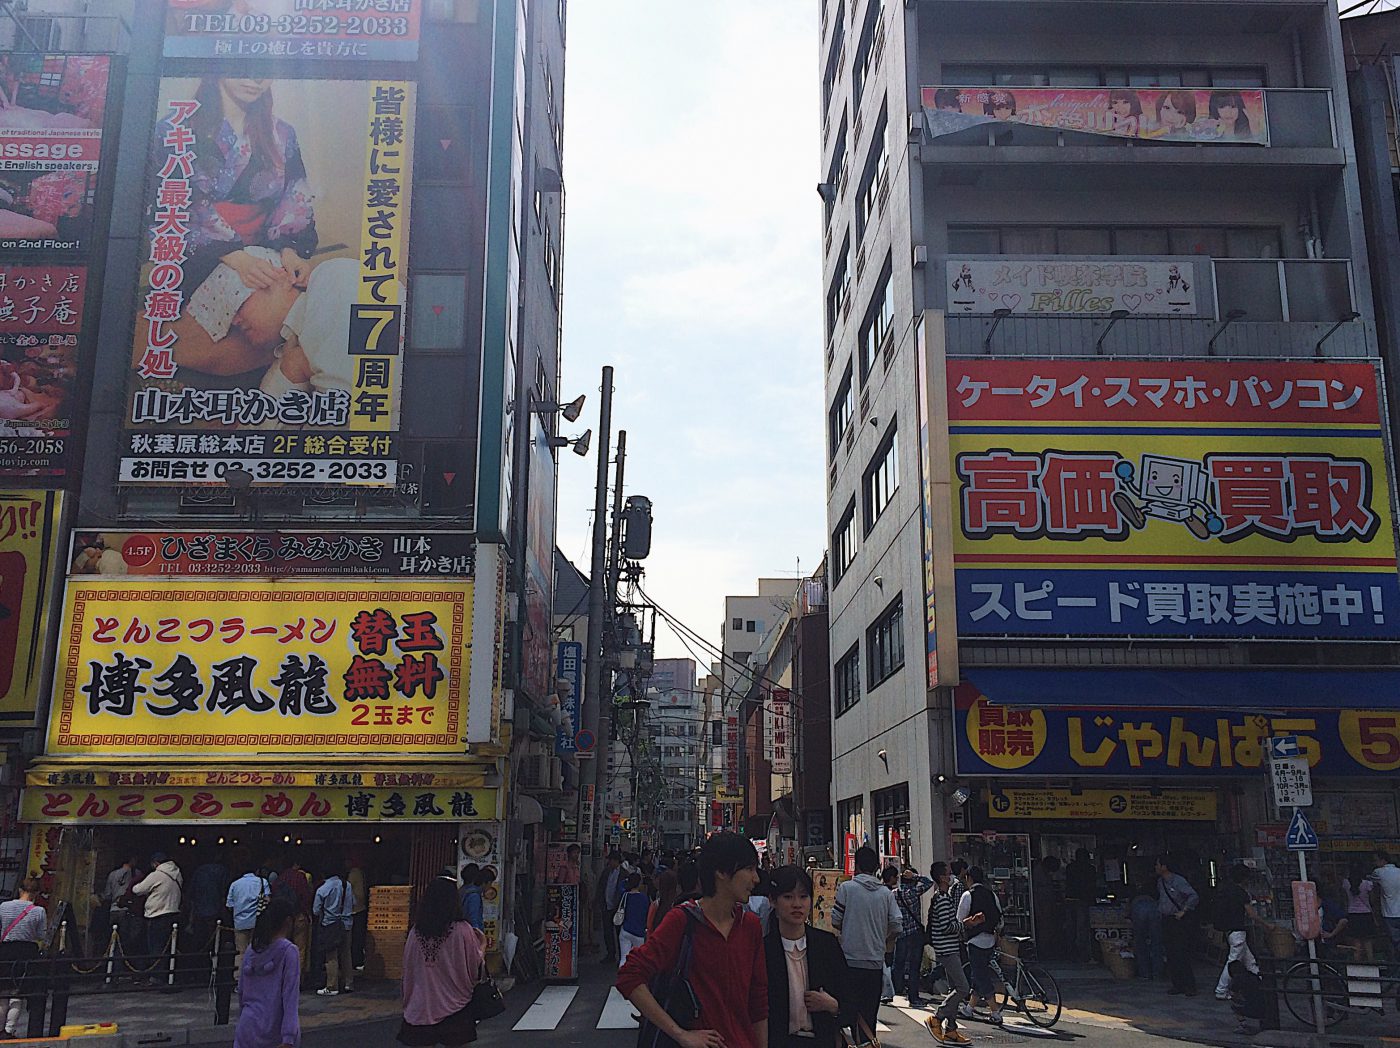 Tokyo Itinerary - Video games and cafes at Akihabara